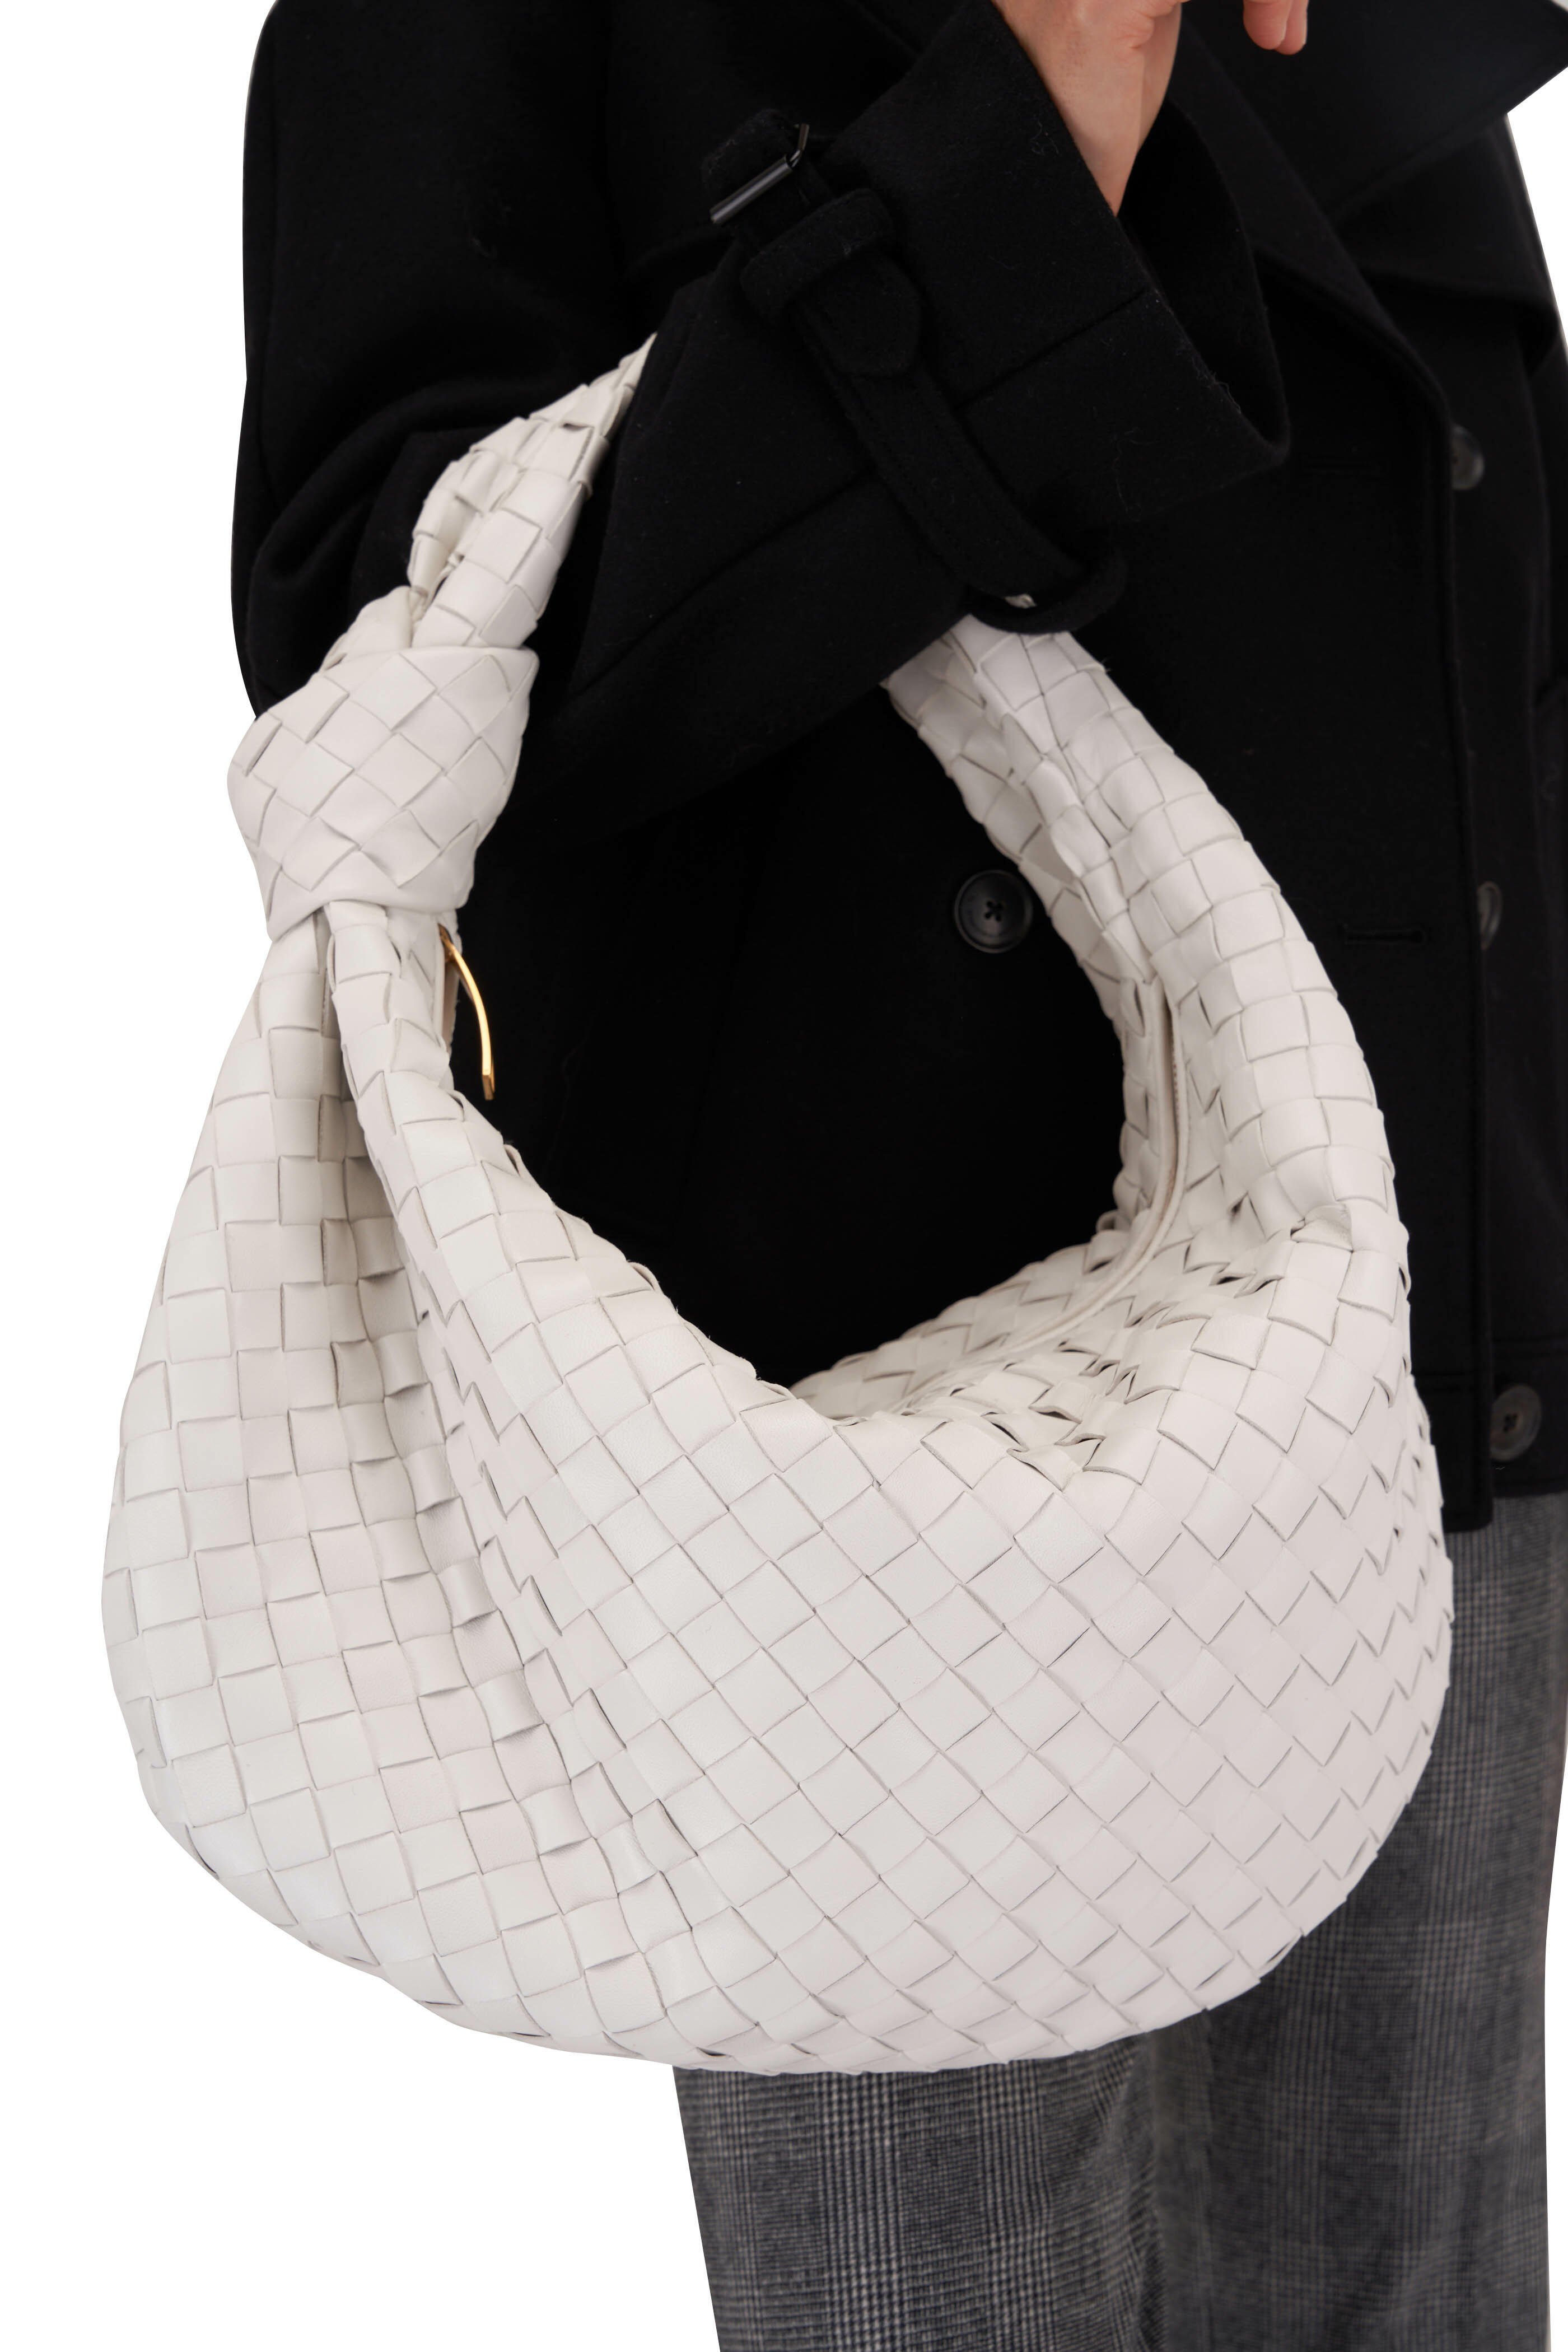 Bottega Veneta Small Jodie - Natural - Shoulder bag